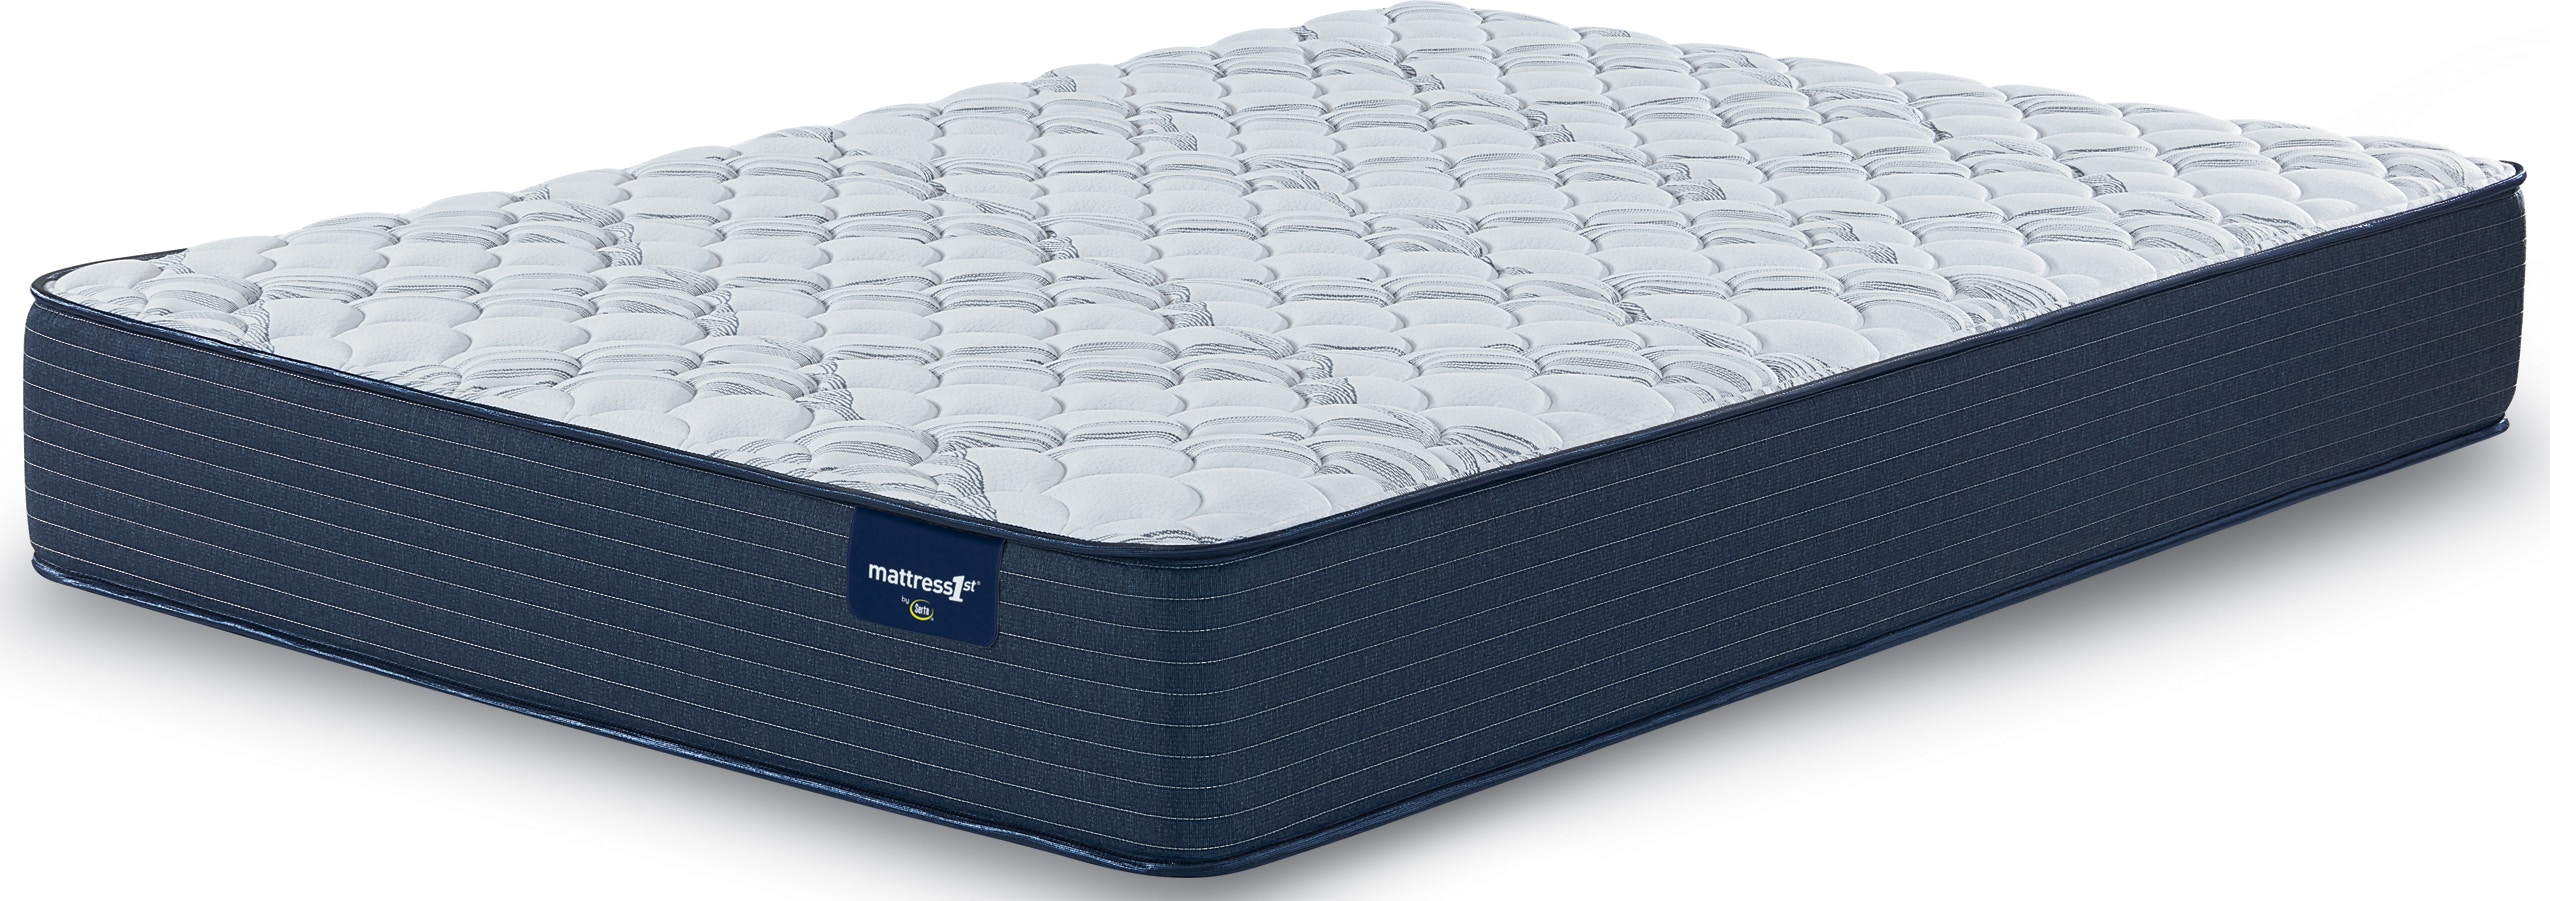 mattress 1st by serta